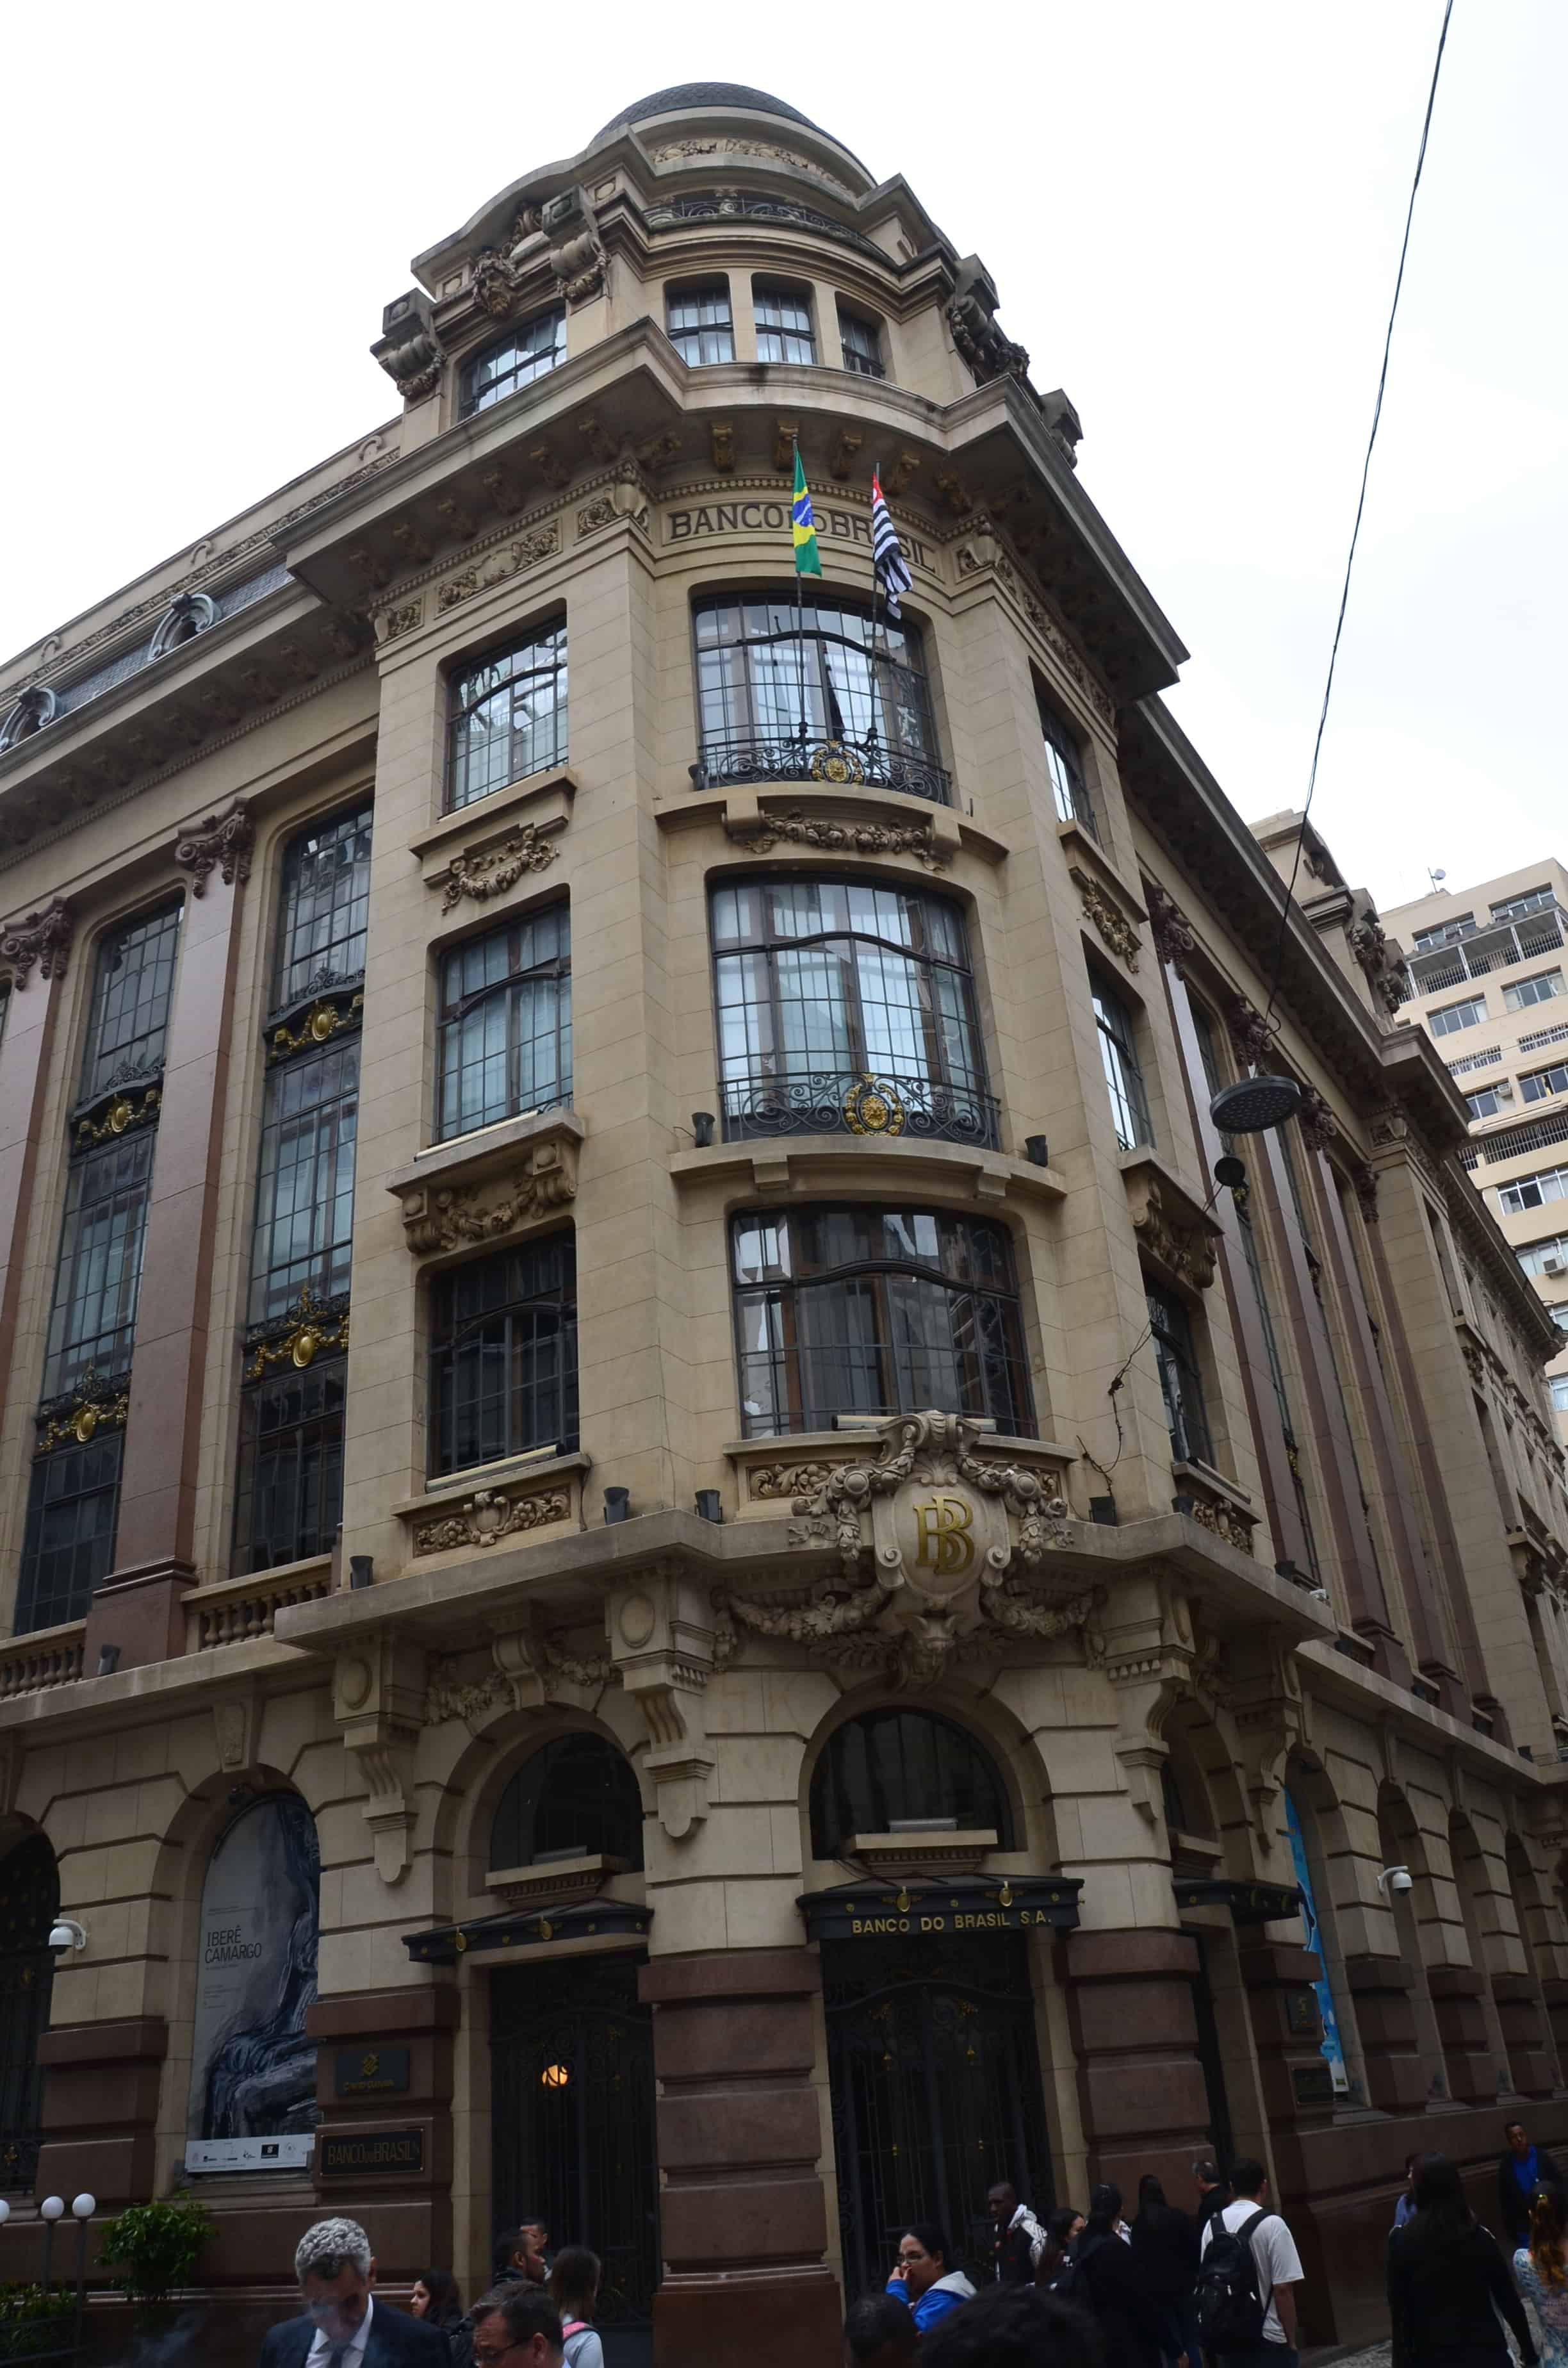 Centro Cultural Banco do Brasil in São Paulo, Brazil